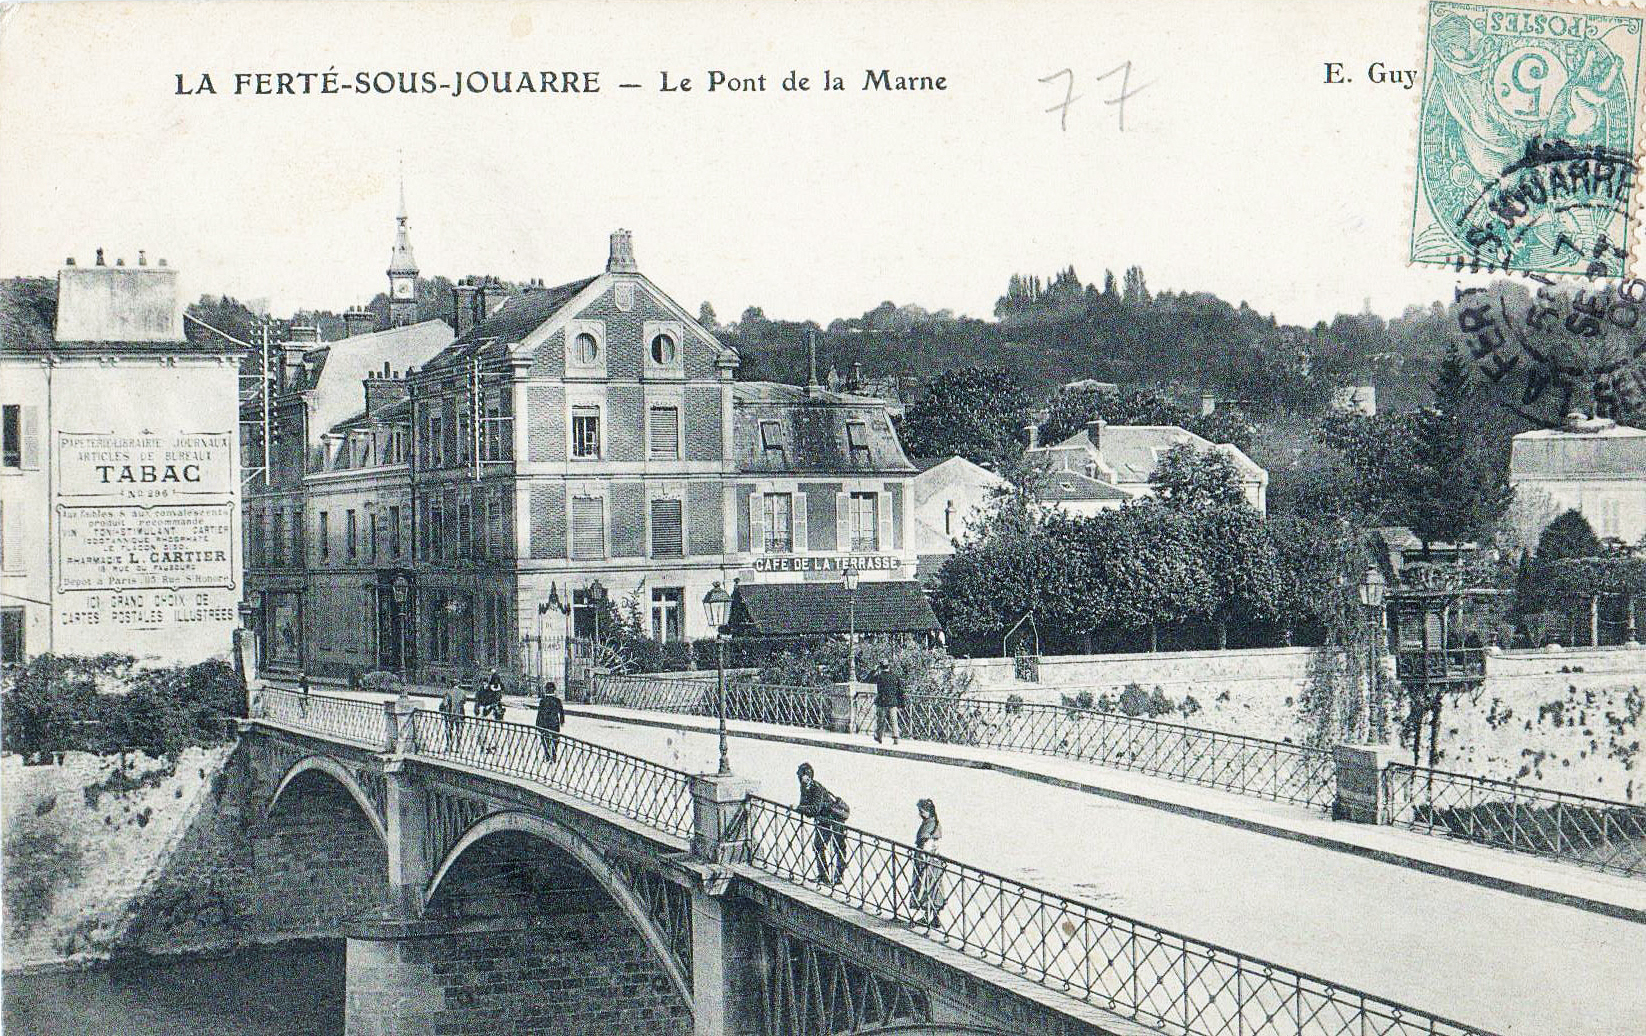 Le pont de la marne - La Ferté-sous-Jouarre